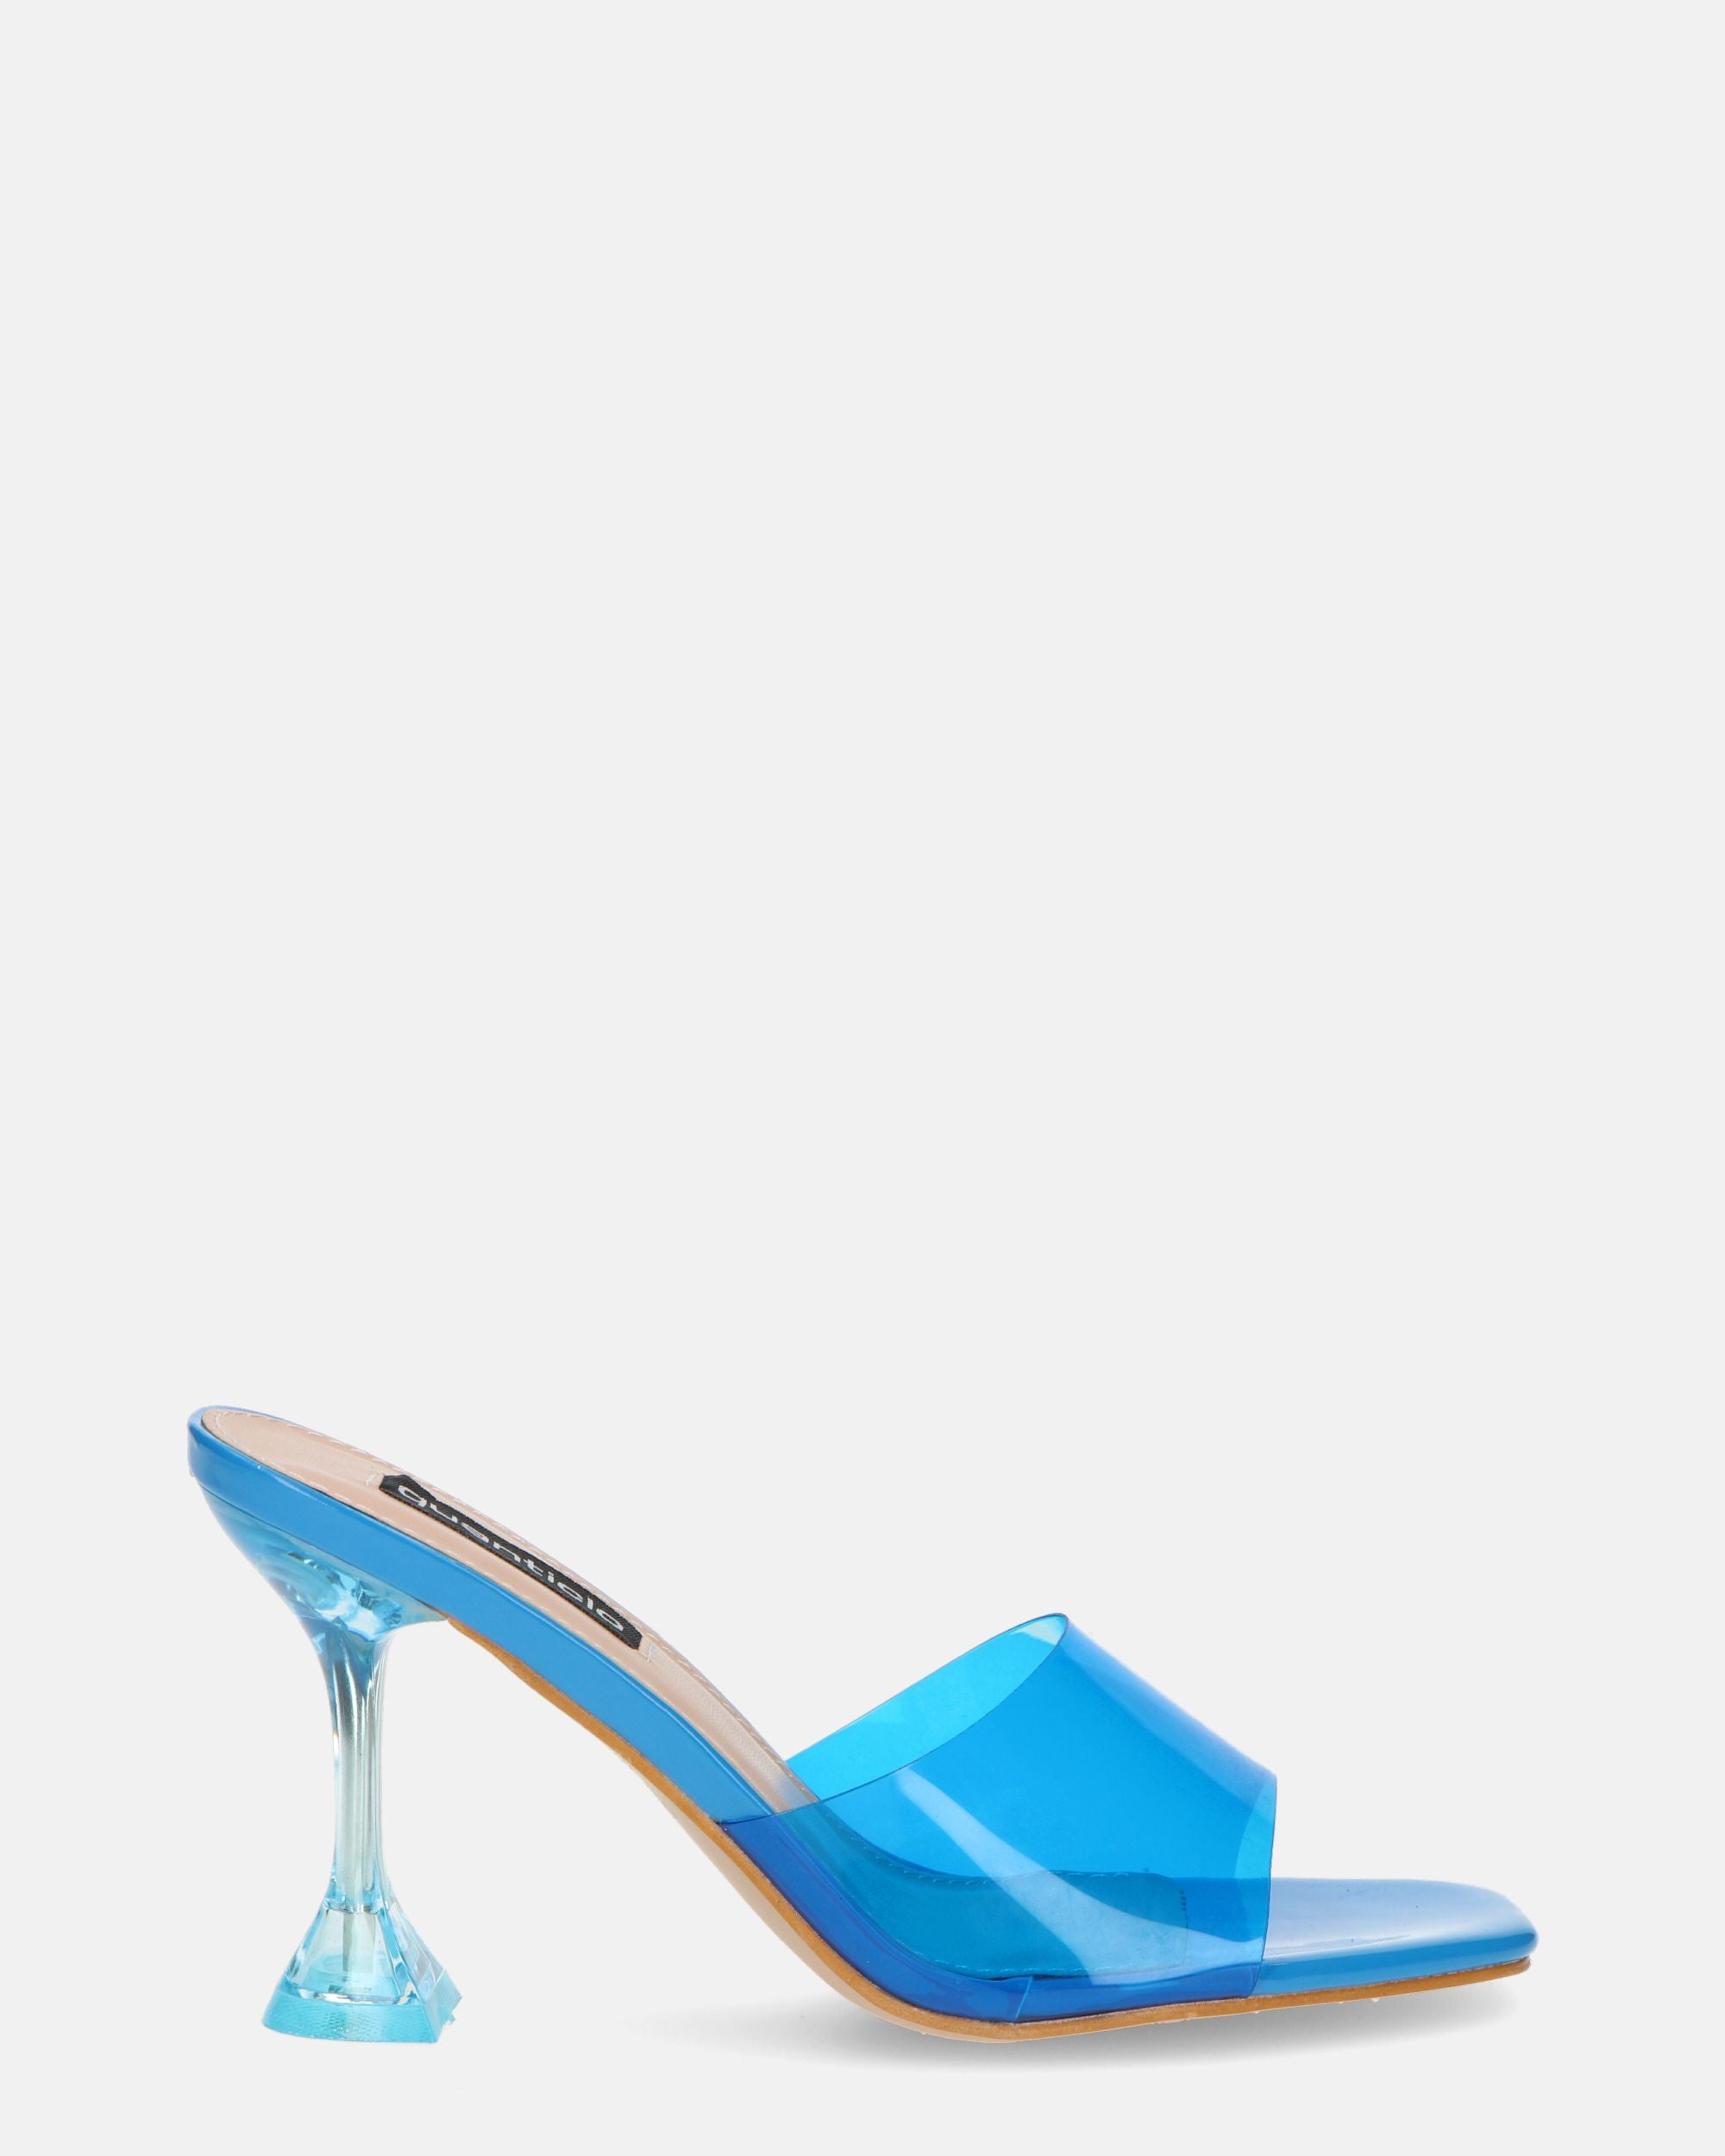 FIAMMA - sandalia de tacón en perspex azul con suela de PU